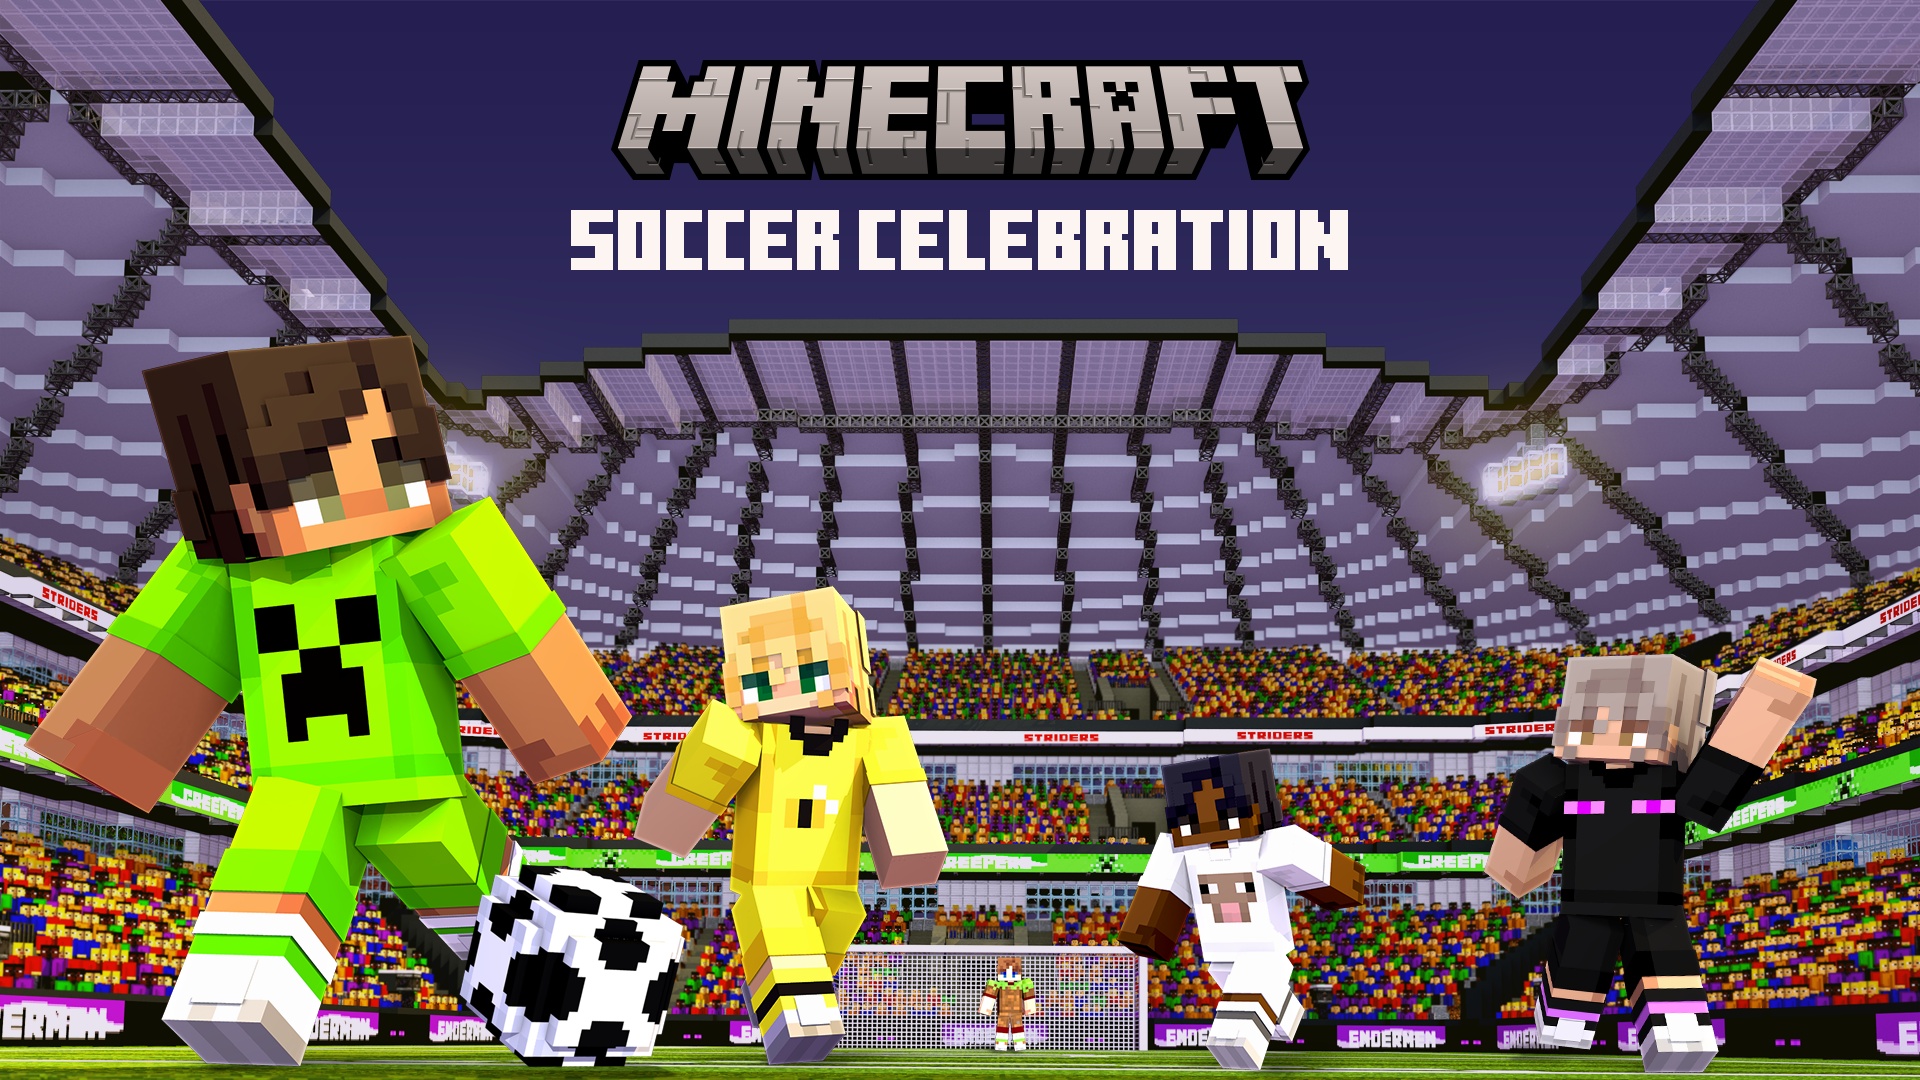 Minecraft Soccer Celebration